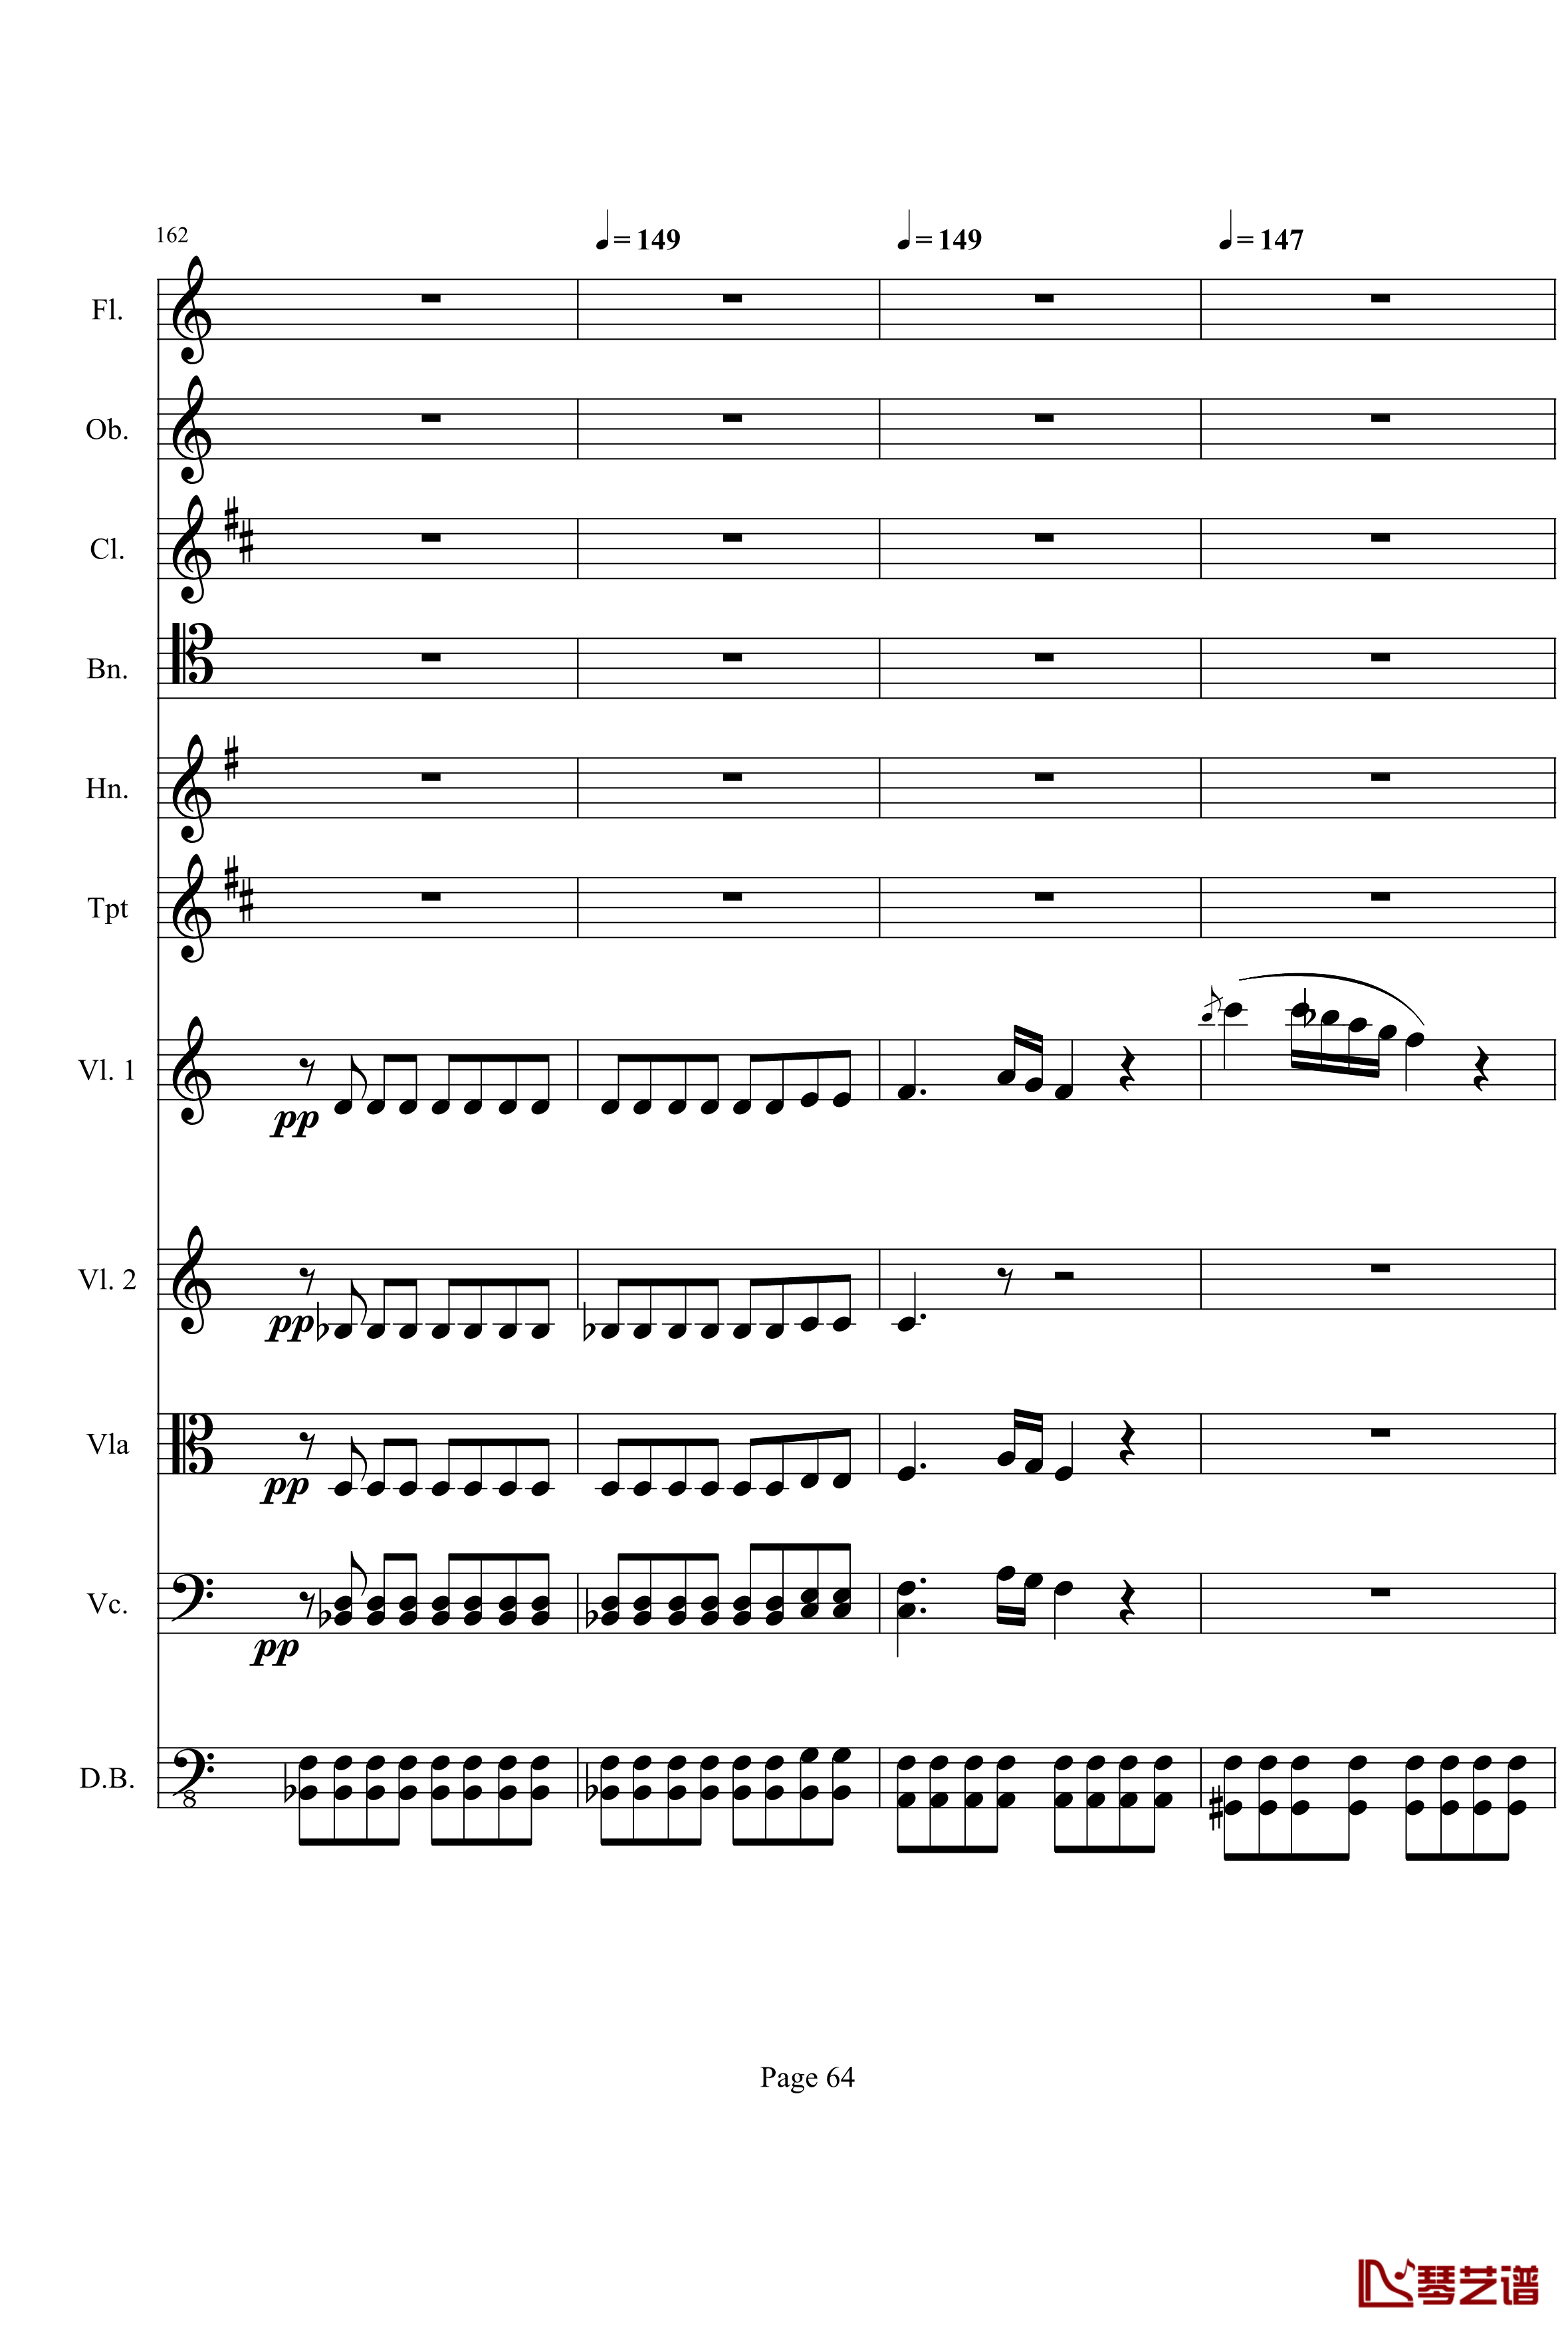 奏鸣曲之交响钢琴谱-第21-Ⅰ-贝多芬-beethoven64